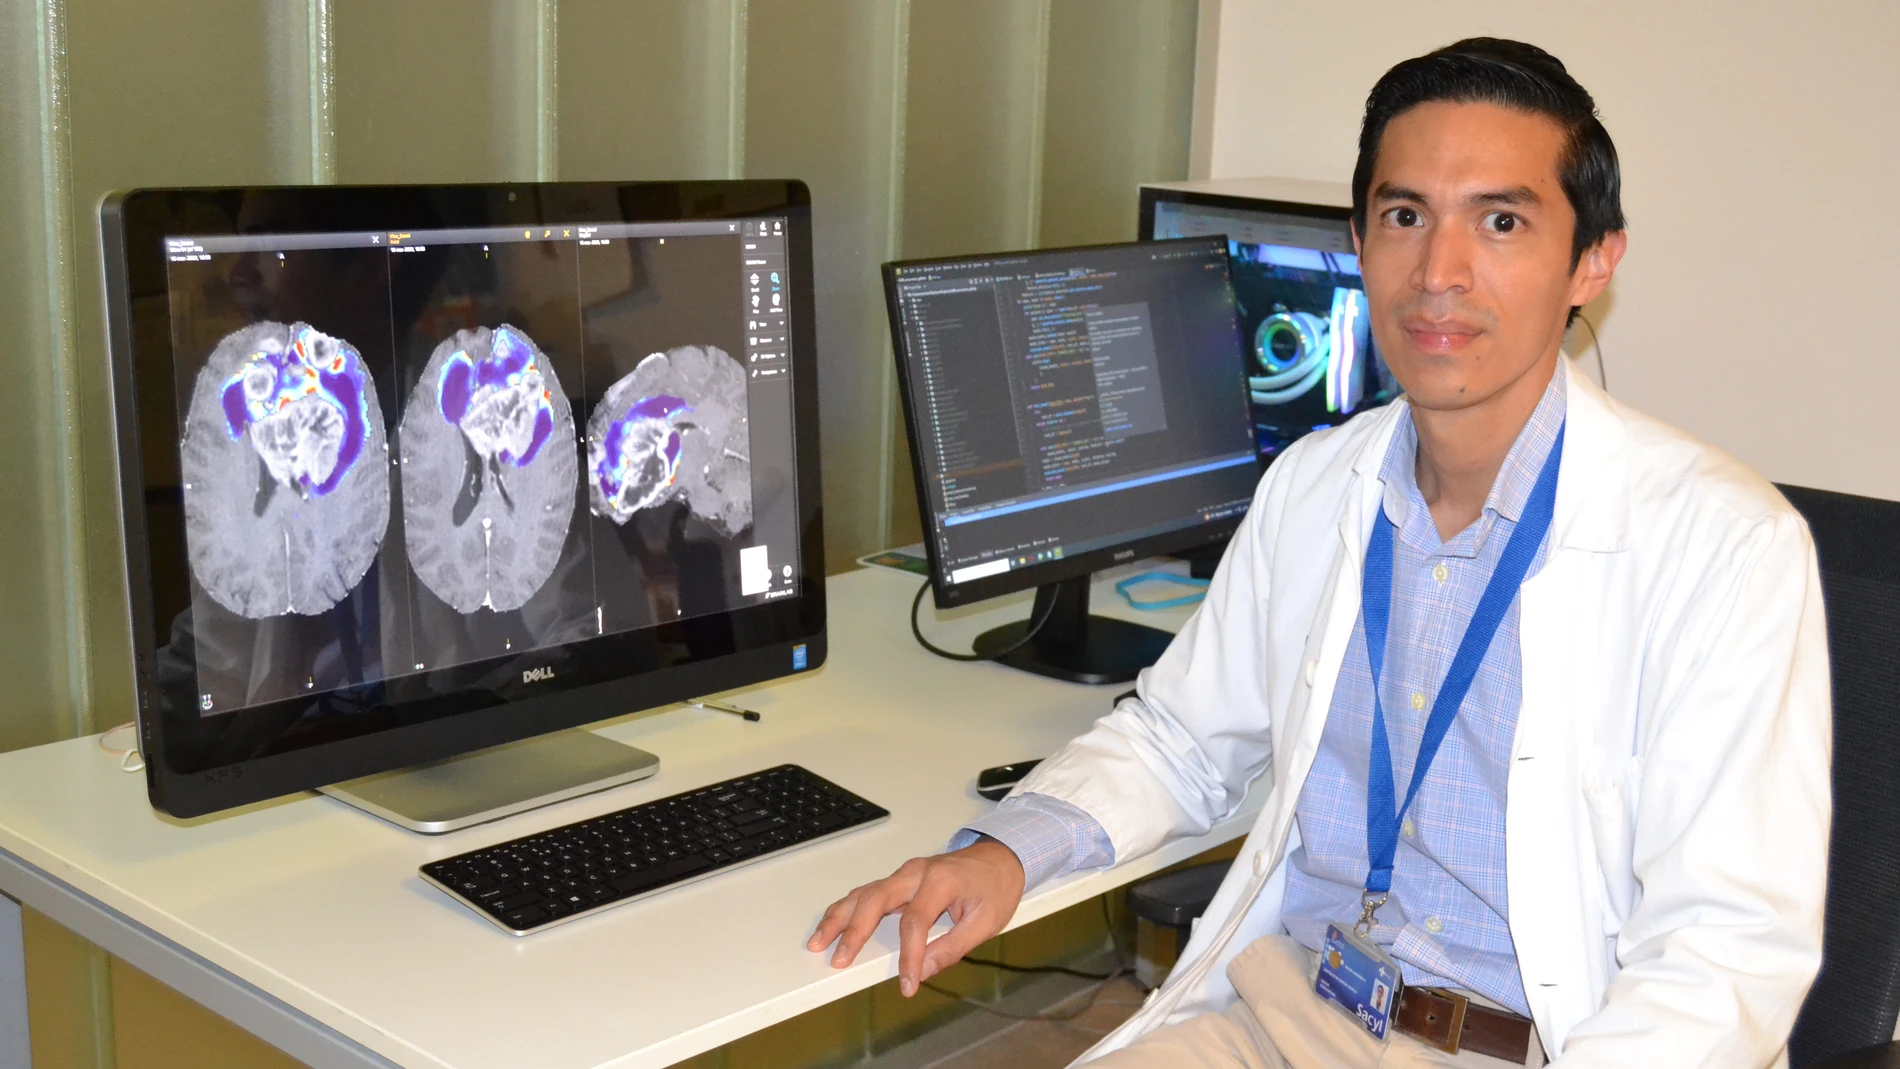 El doctor Santiago Cepeda lidera una investigación basada en la inteligencia artificial contra este tumor cerebral letal